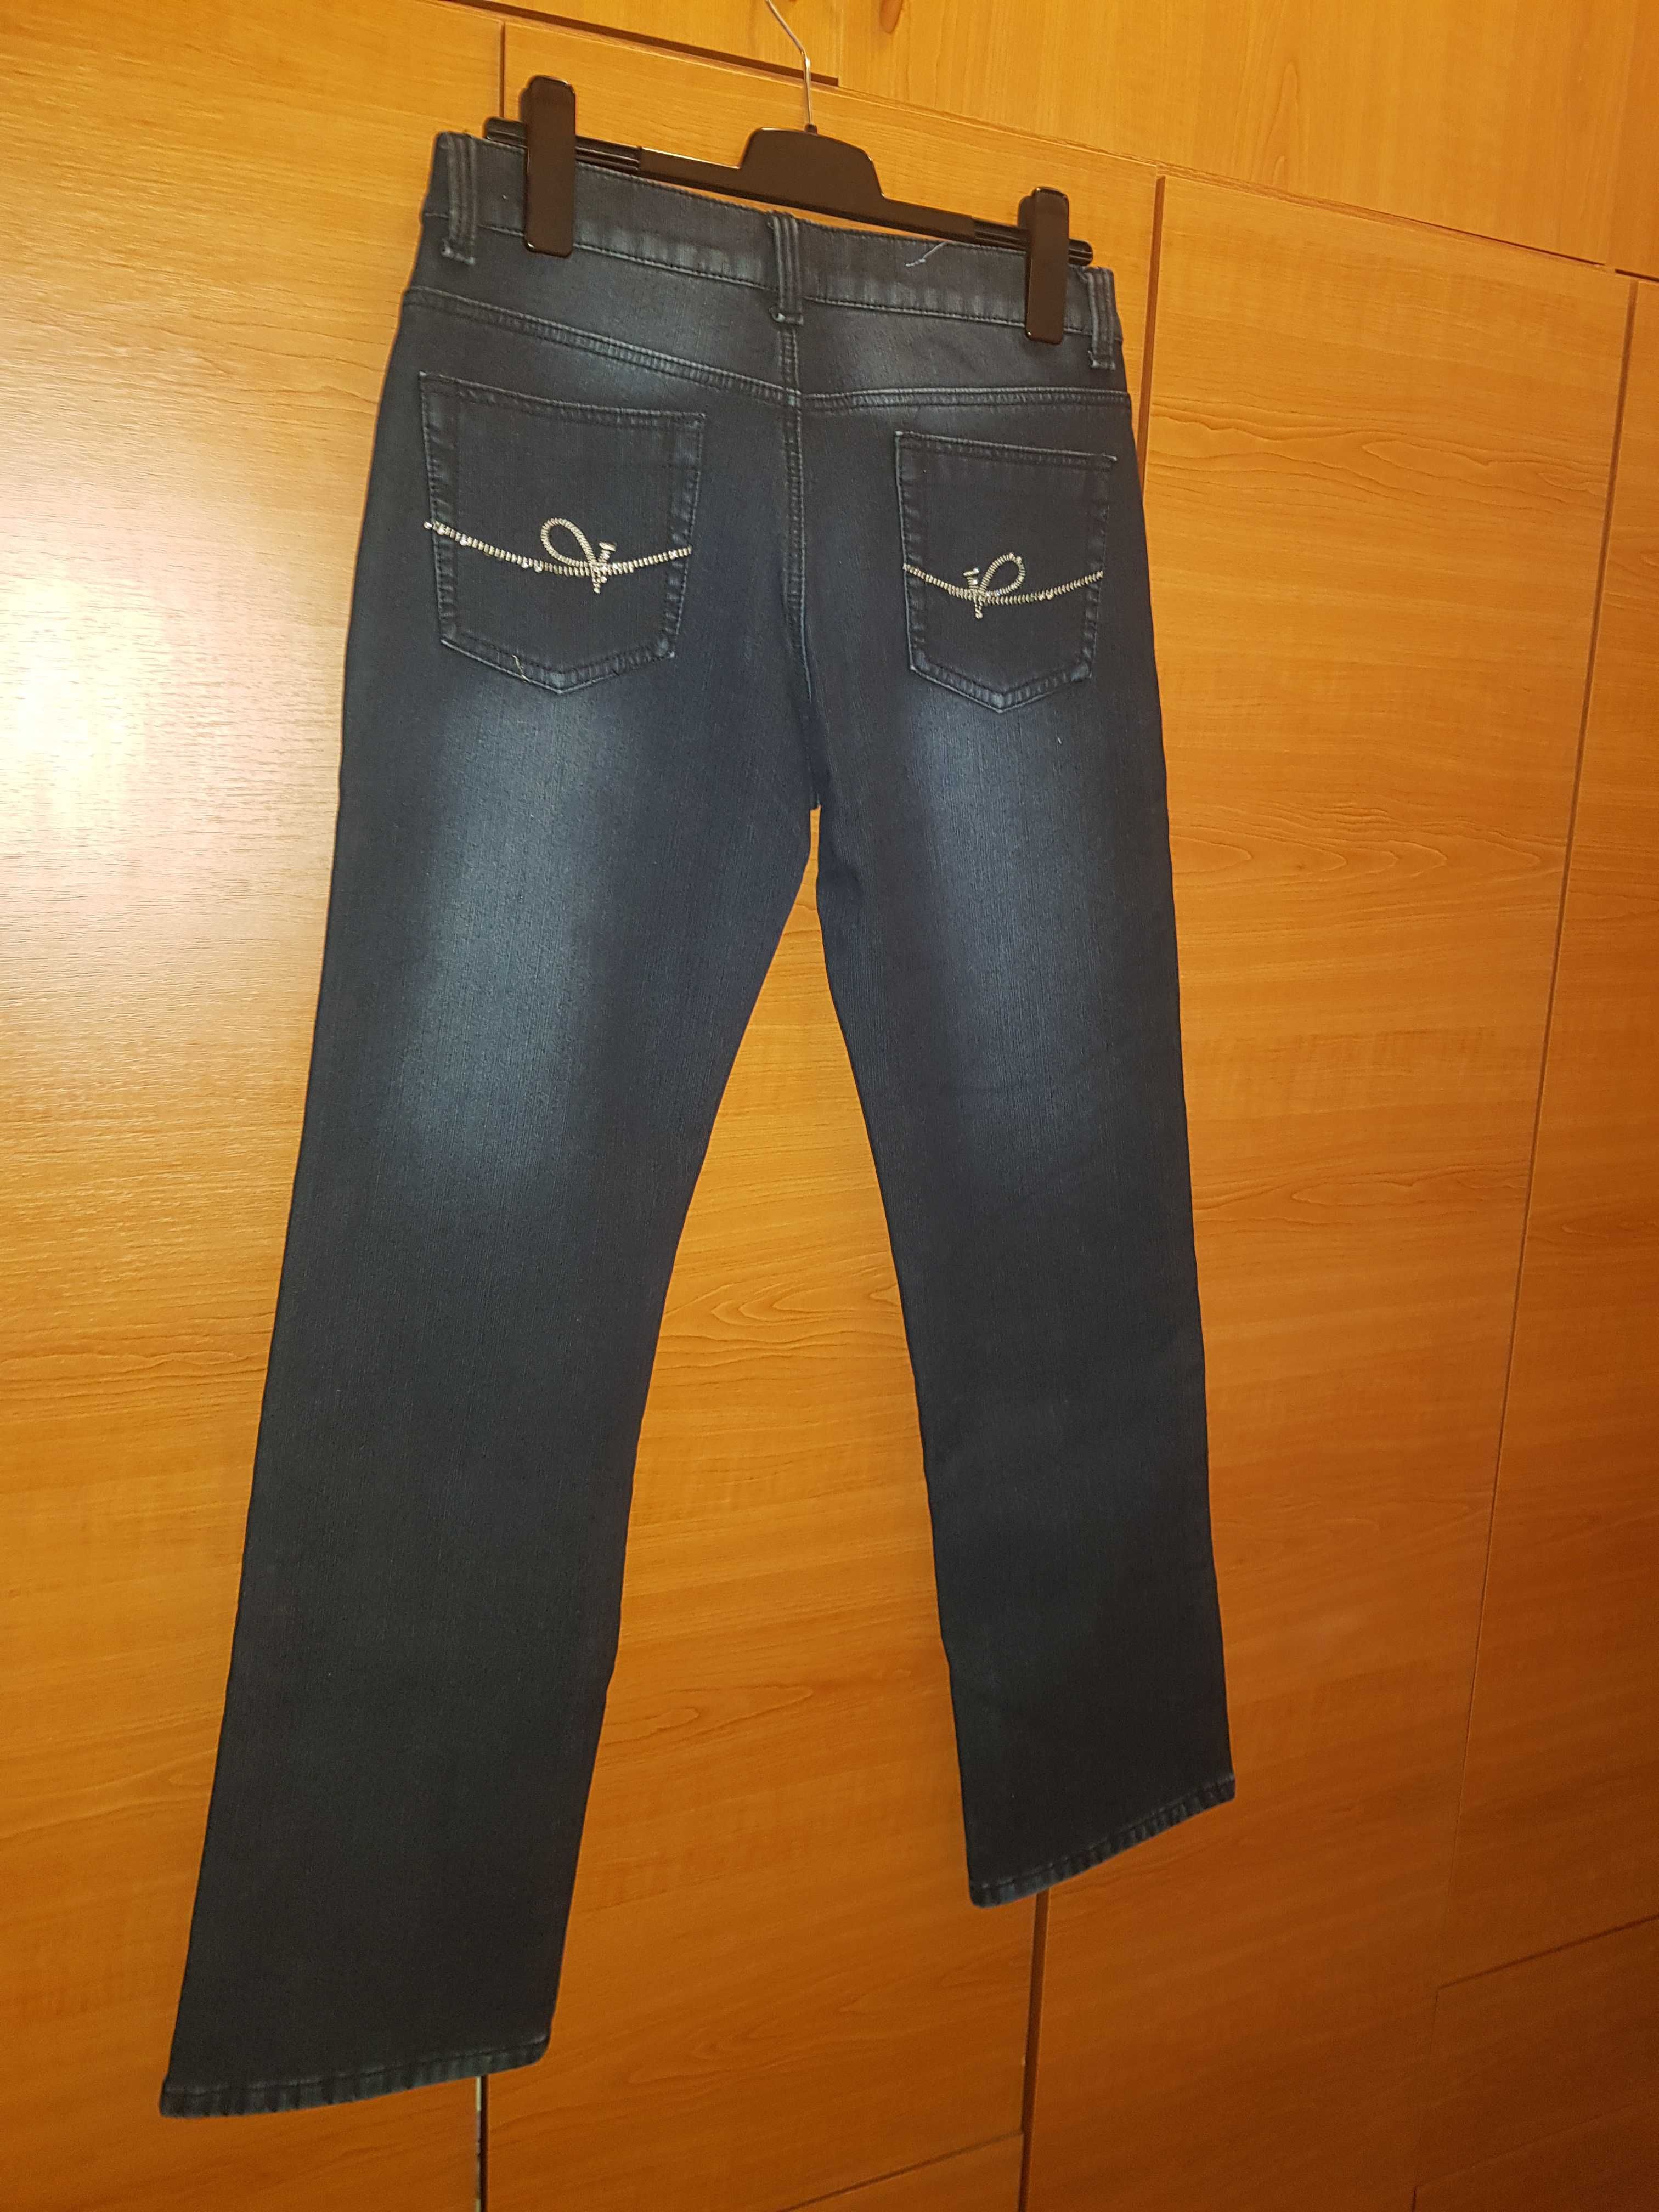 jeans damă căptușiți, mărimea 44-46